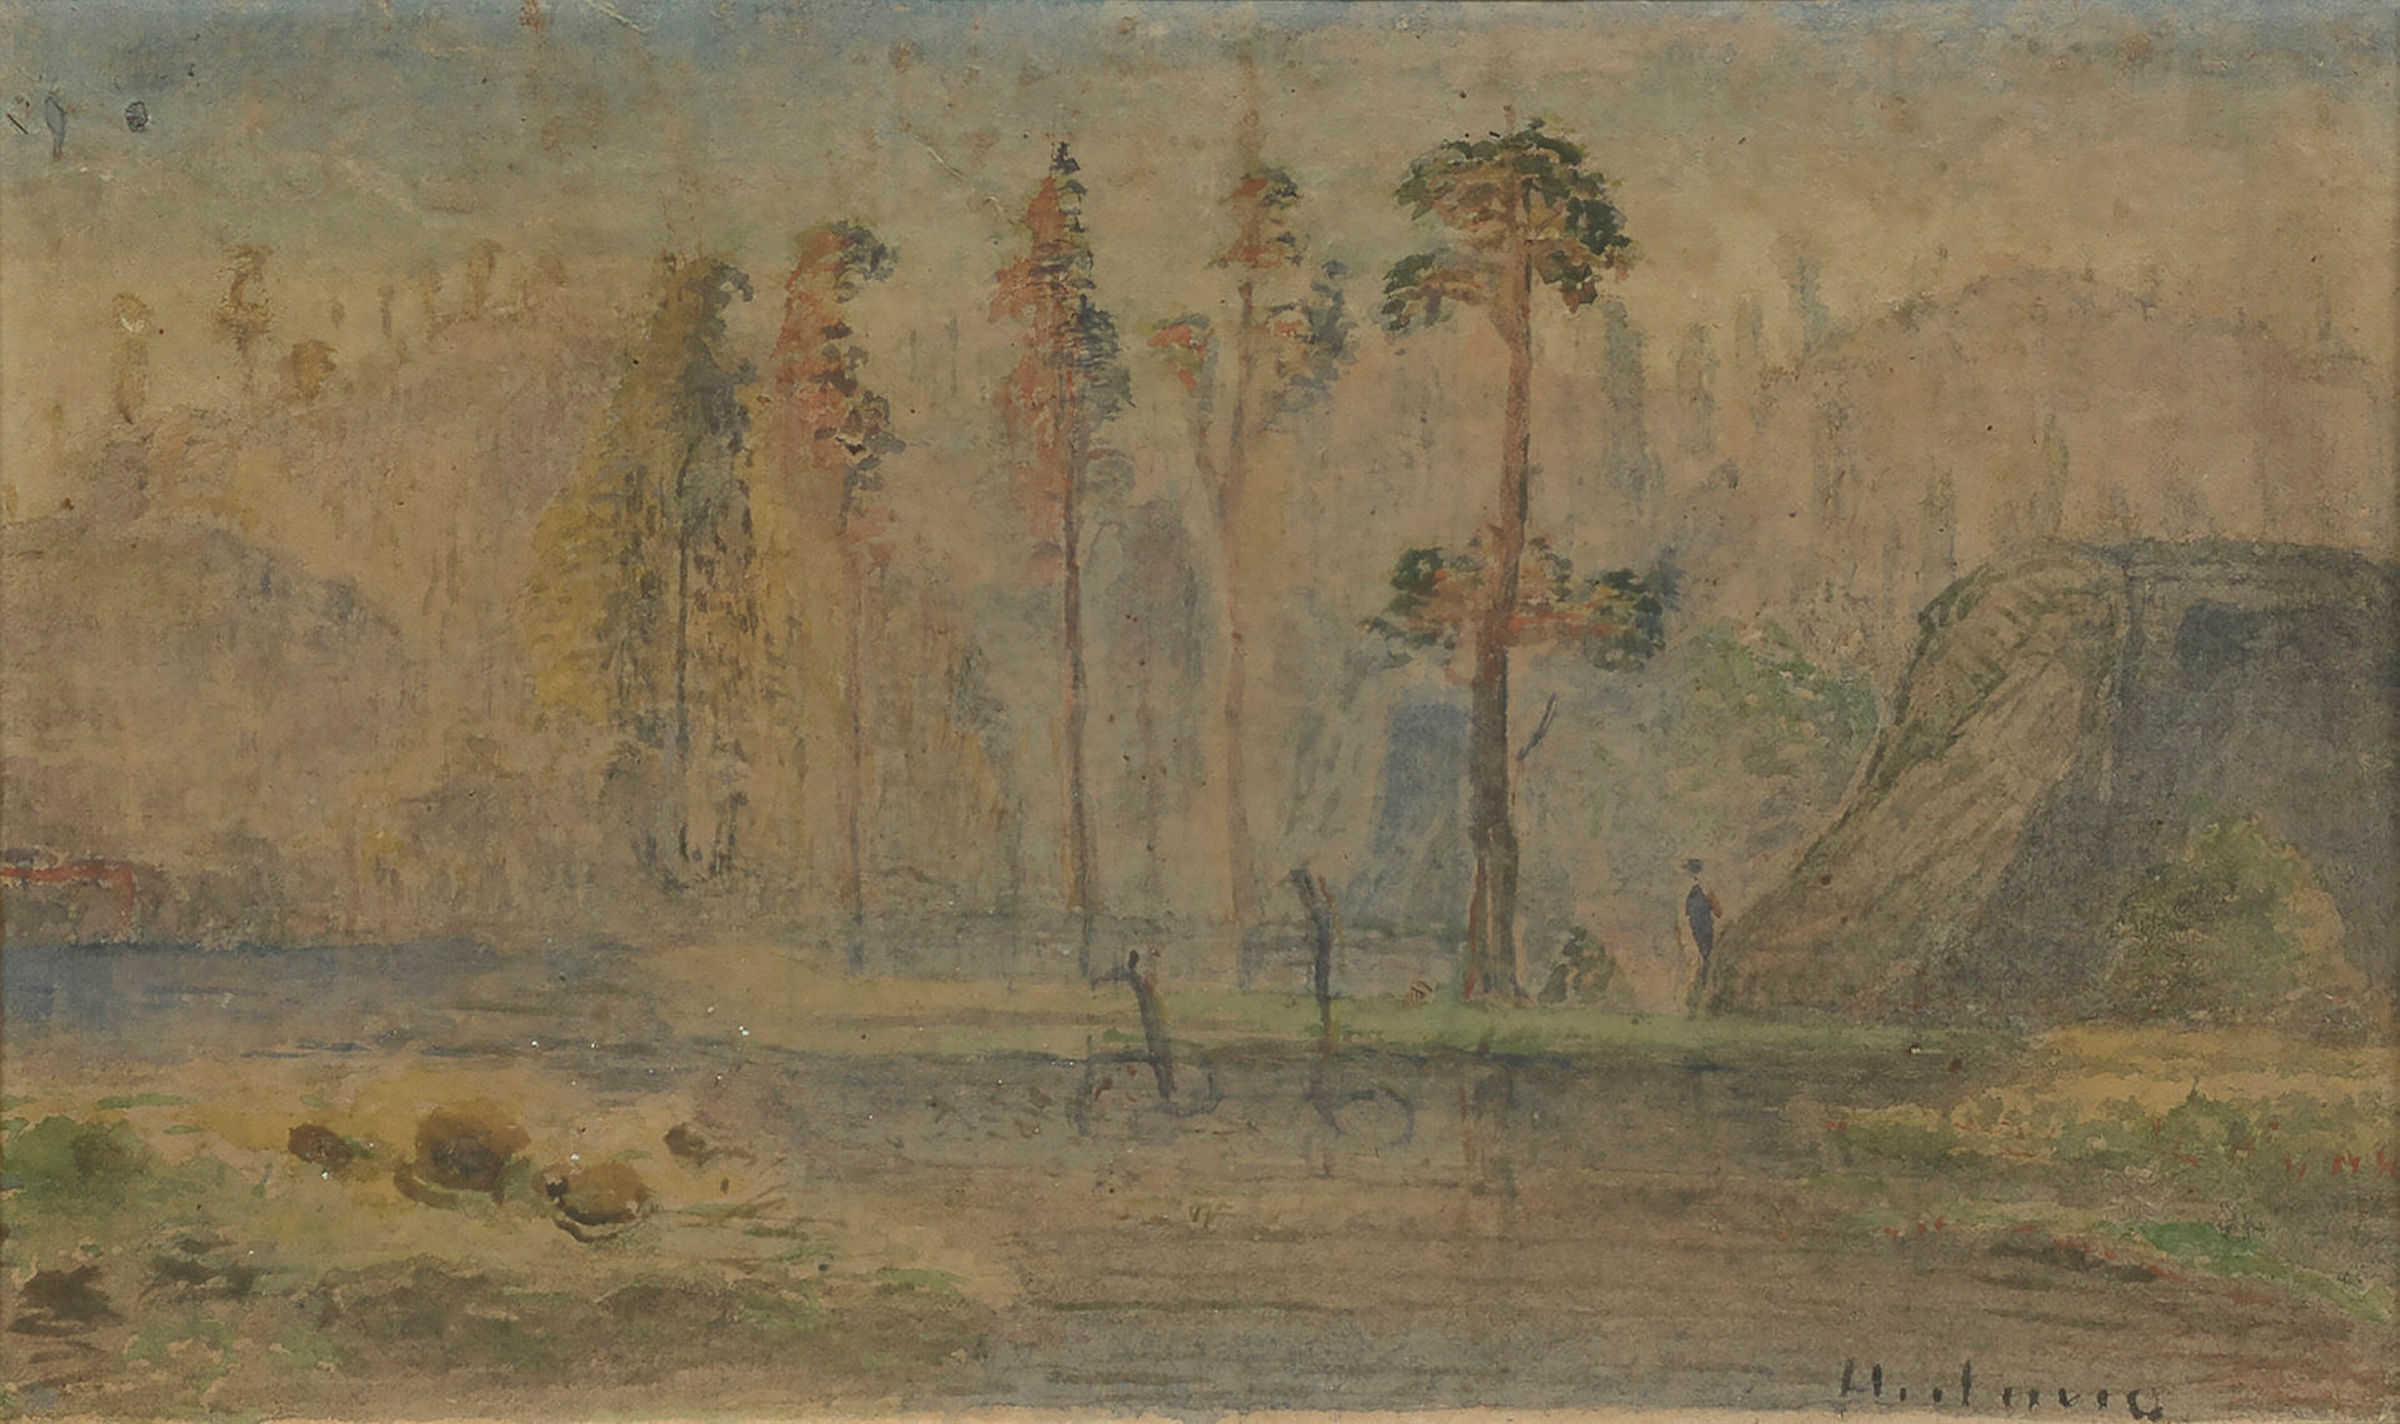 Artwork by Lars Hertervig, Landskap med høye trær, Made of Watercolor on paper